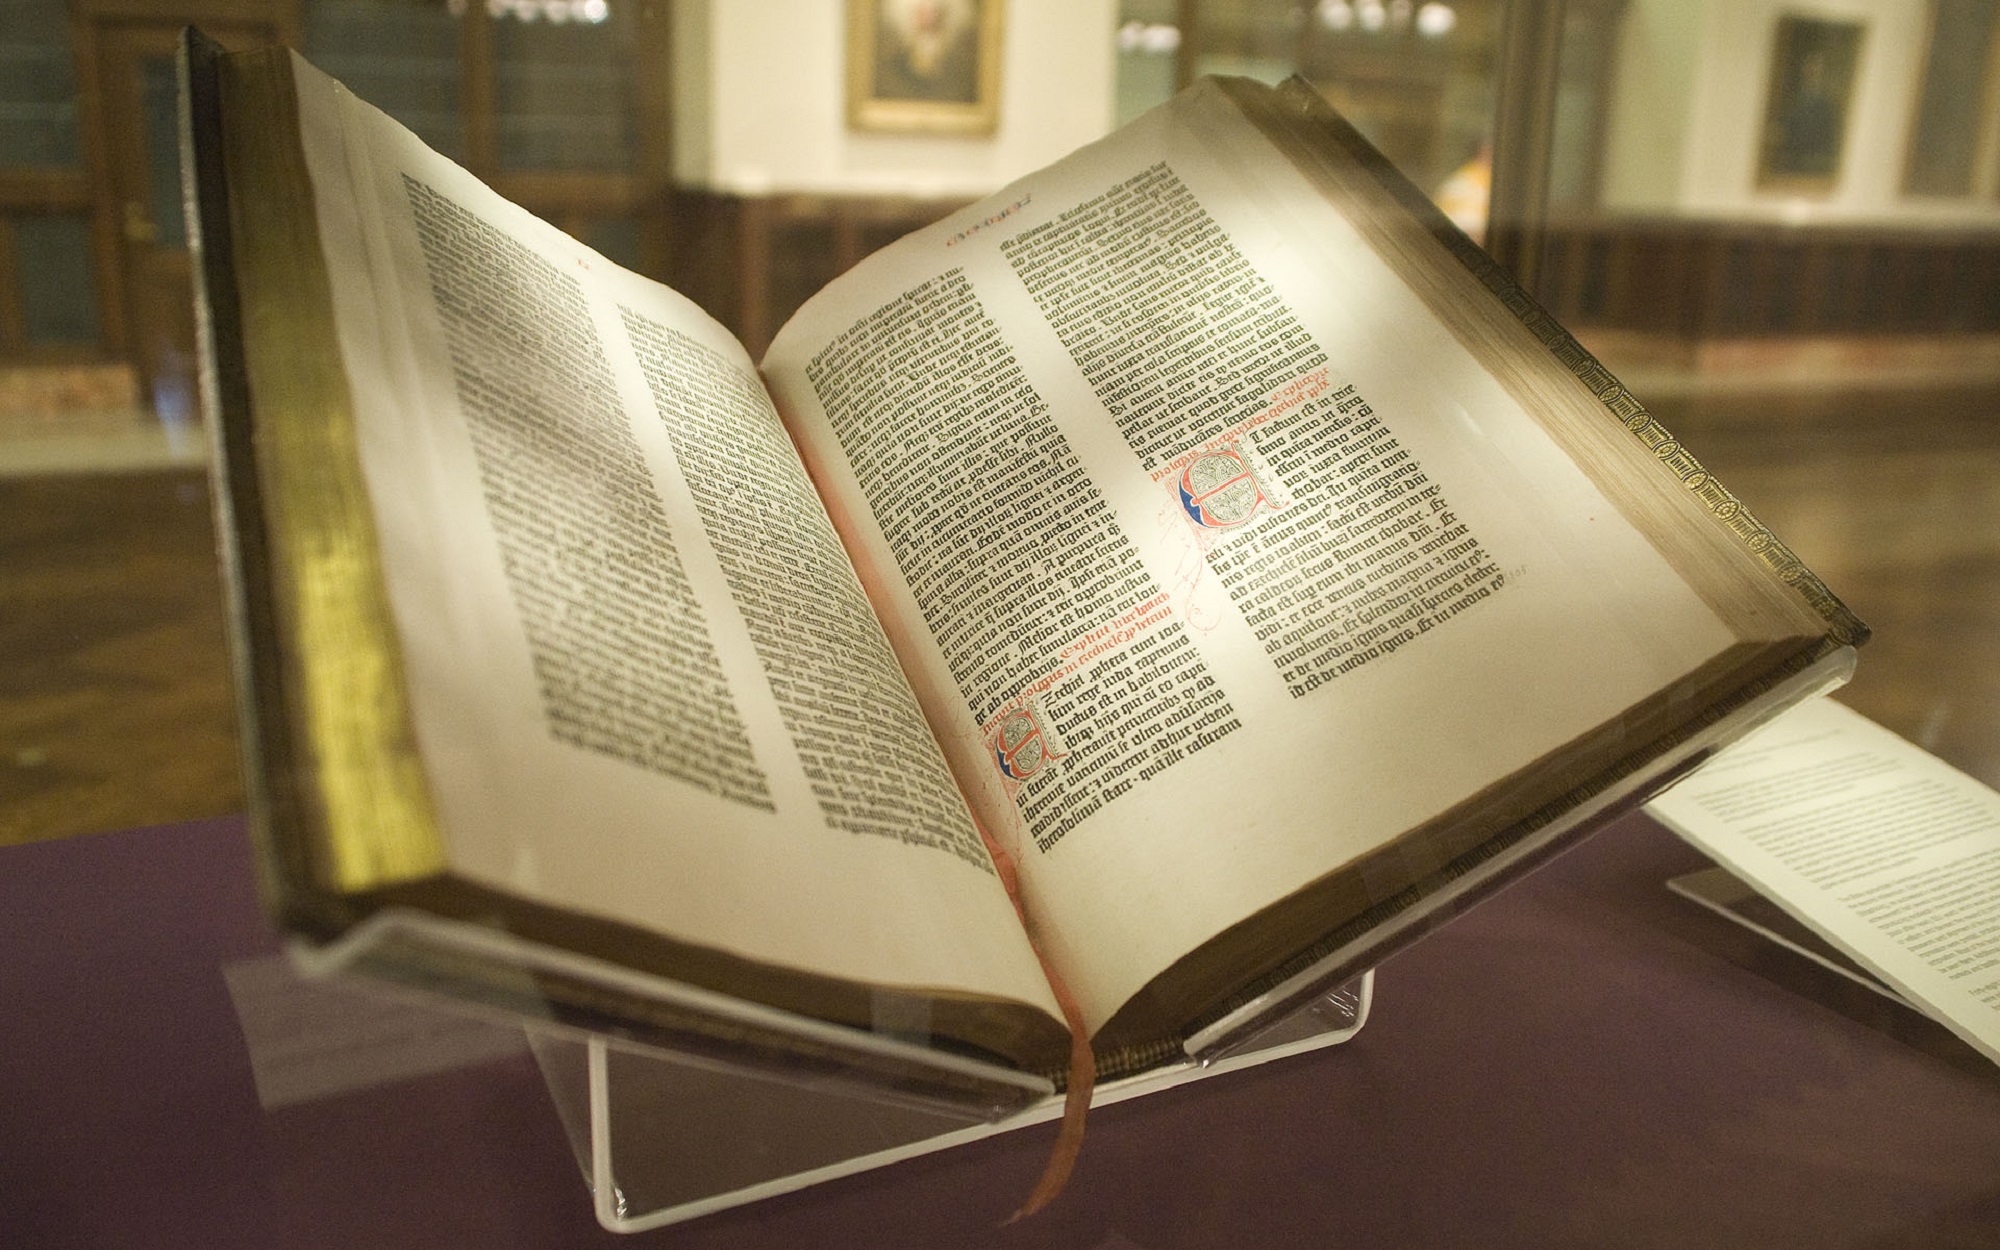 Une rare reproduction intégrale de la bible imprimée par Gutenberg, datée de 1455 environ, appelée « Lenox Copy », conservée à la New York Public Library. On estime qu'il reste 45 reproductions d'époque de cet ouvrage. © Wikimedia Commons, domaine public.